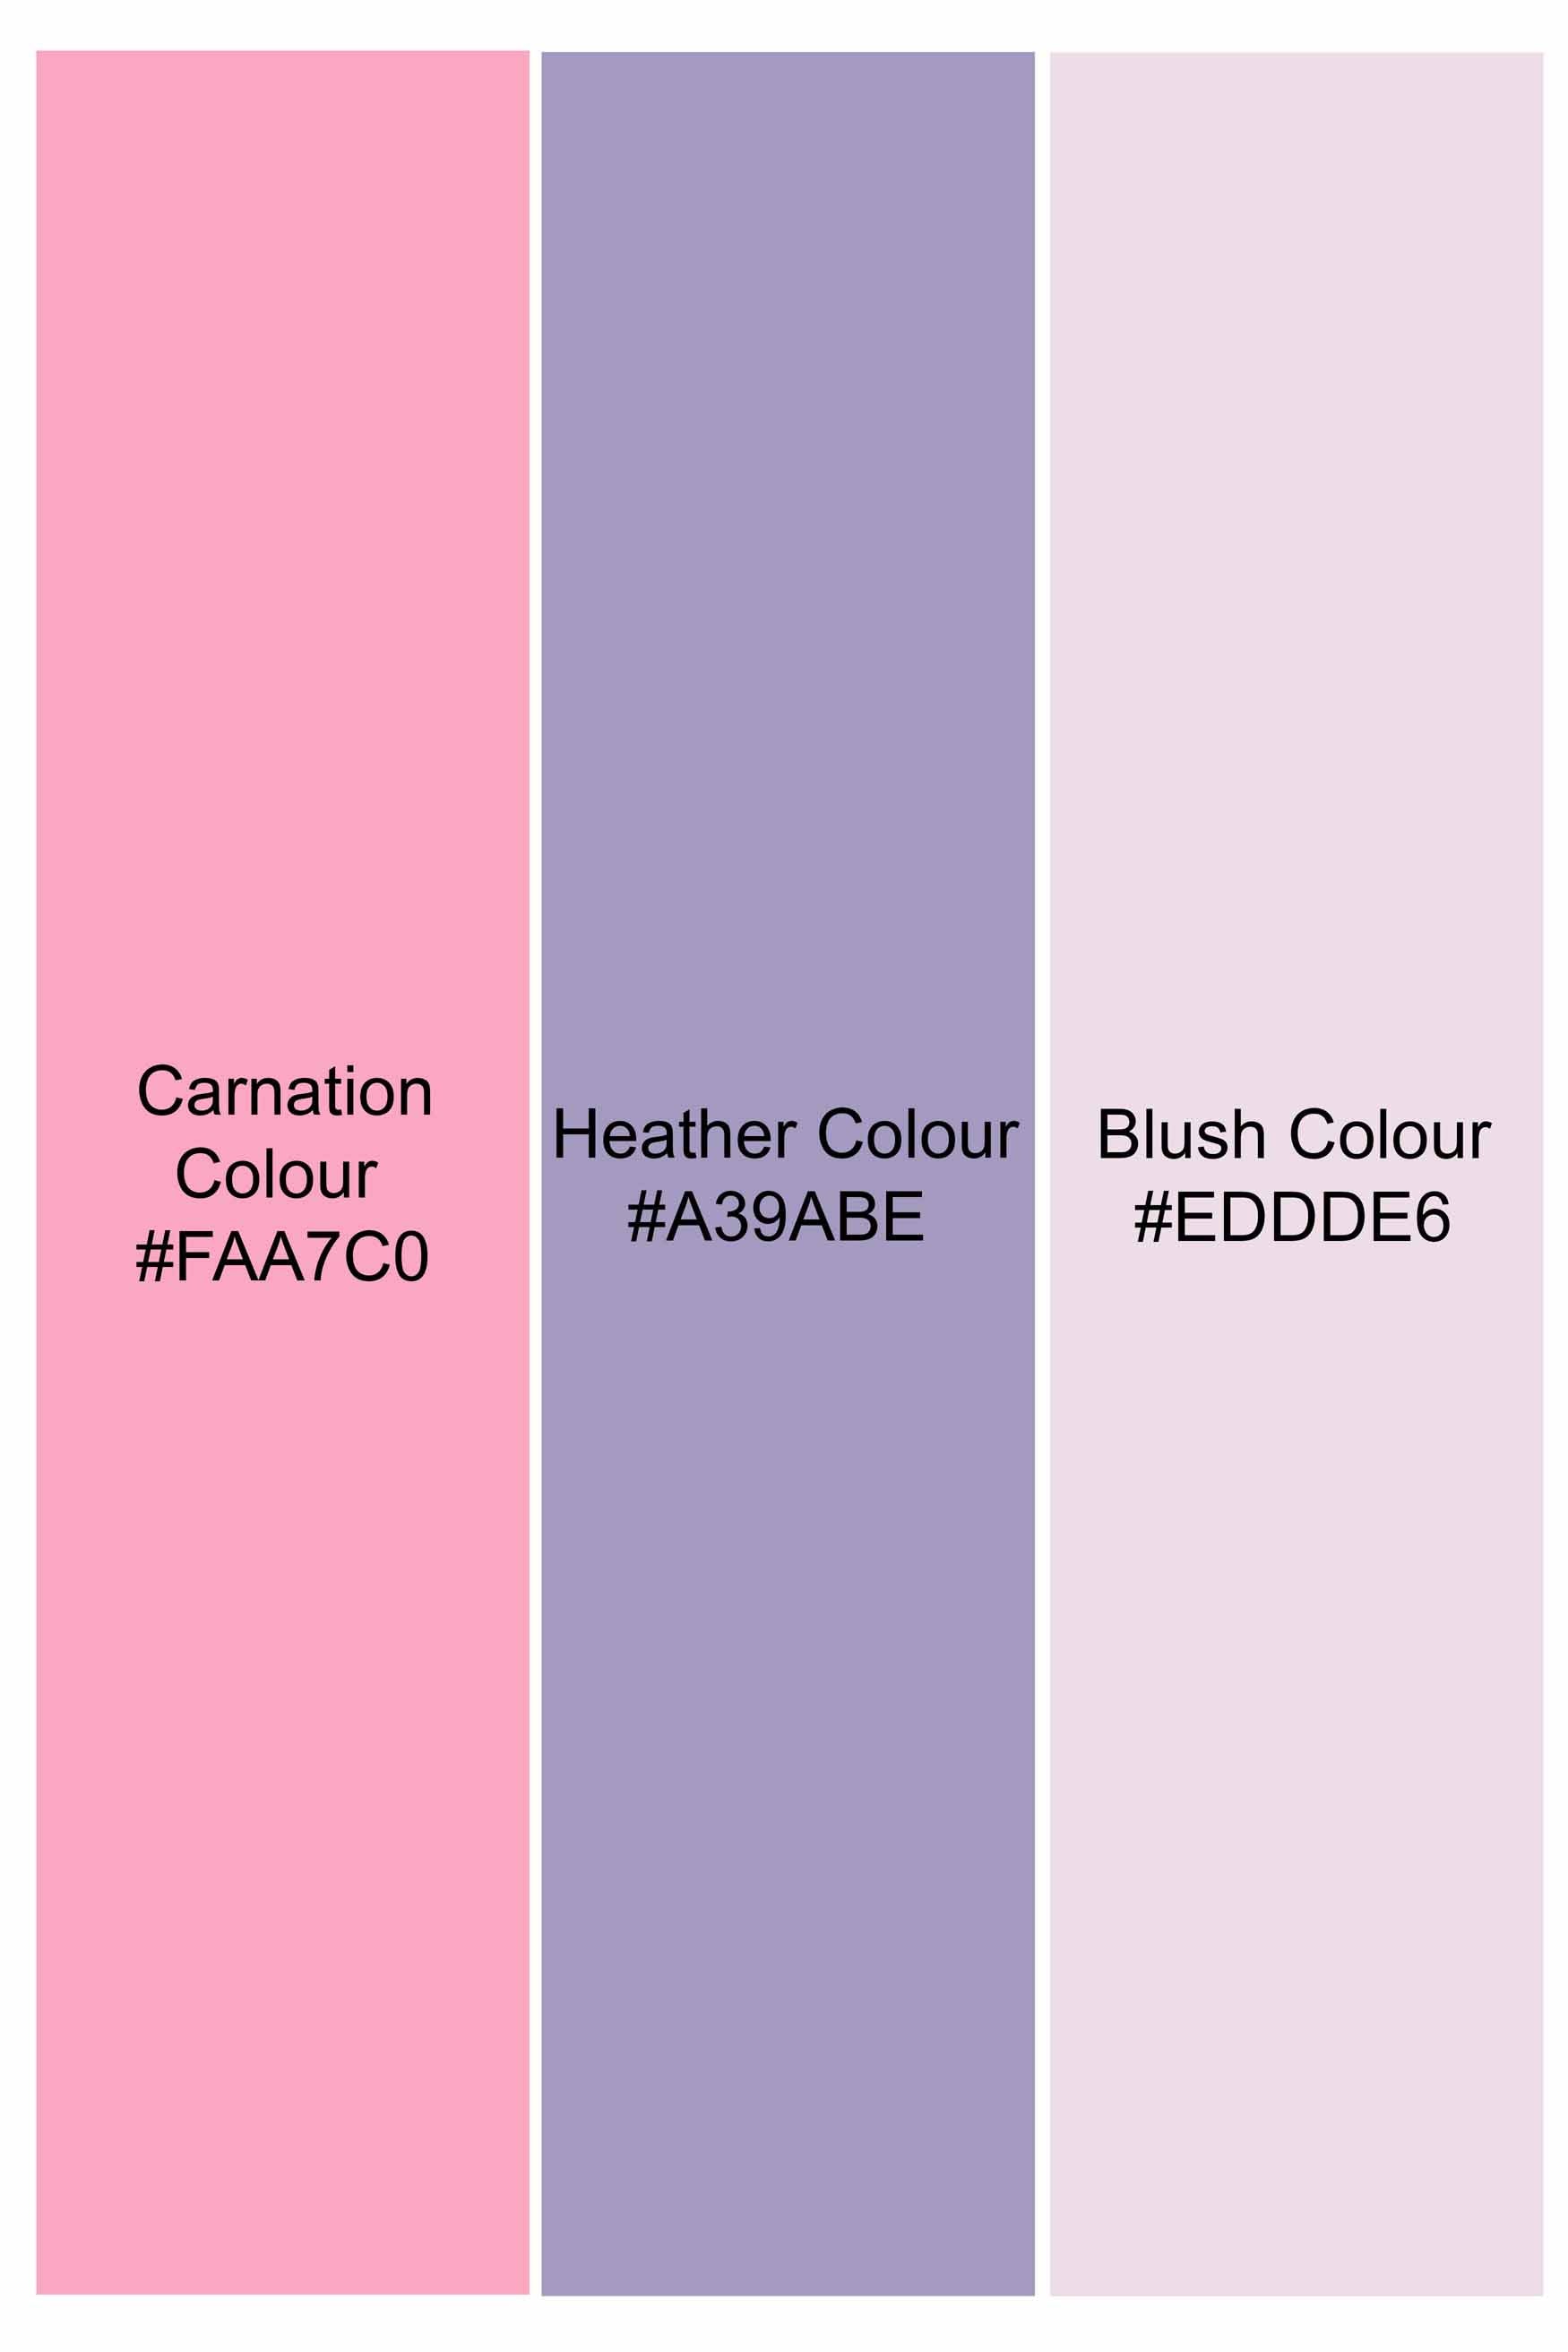 Carnation Pink and Heather Purple Bird Hand Painted Luxurious Linen Designer Shirt 6138-M-ART-38, 6138-M-ART-H-38, 6138-M-ART-39, 6138-M-ART-H-39, 6138-M-ART-40, 6138-M-ART-H-40, 6138-M-ART-42, 6138-M-ART-H-42, 6138-M-ART-44, 6138-M-ART-H-44, 6138-M-ART-46, 6138-M-ART-H-46, 6138-M-ART-48, 6138-M-ART-H-48, 6138-M-ART-50, 6138-M-ART-H-50, 6138-M-ART-52, 6138-M-ART-H-52